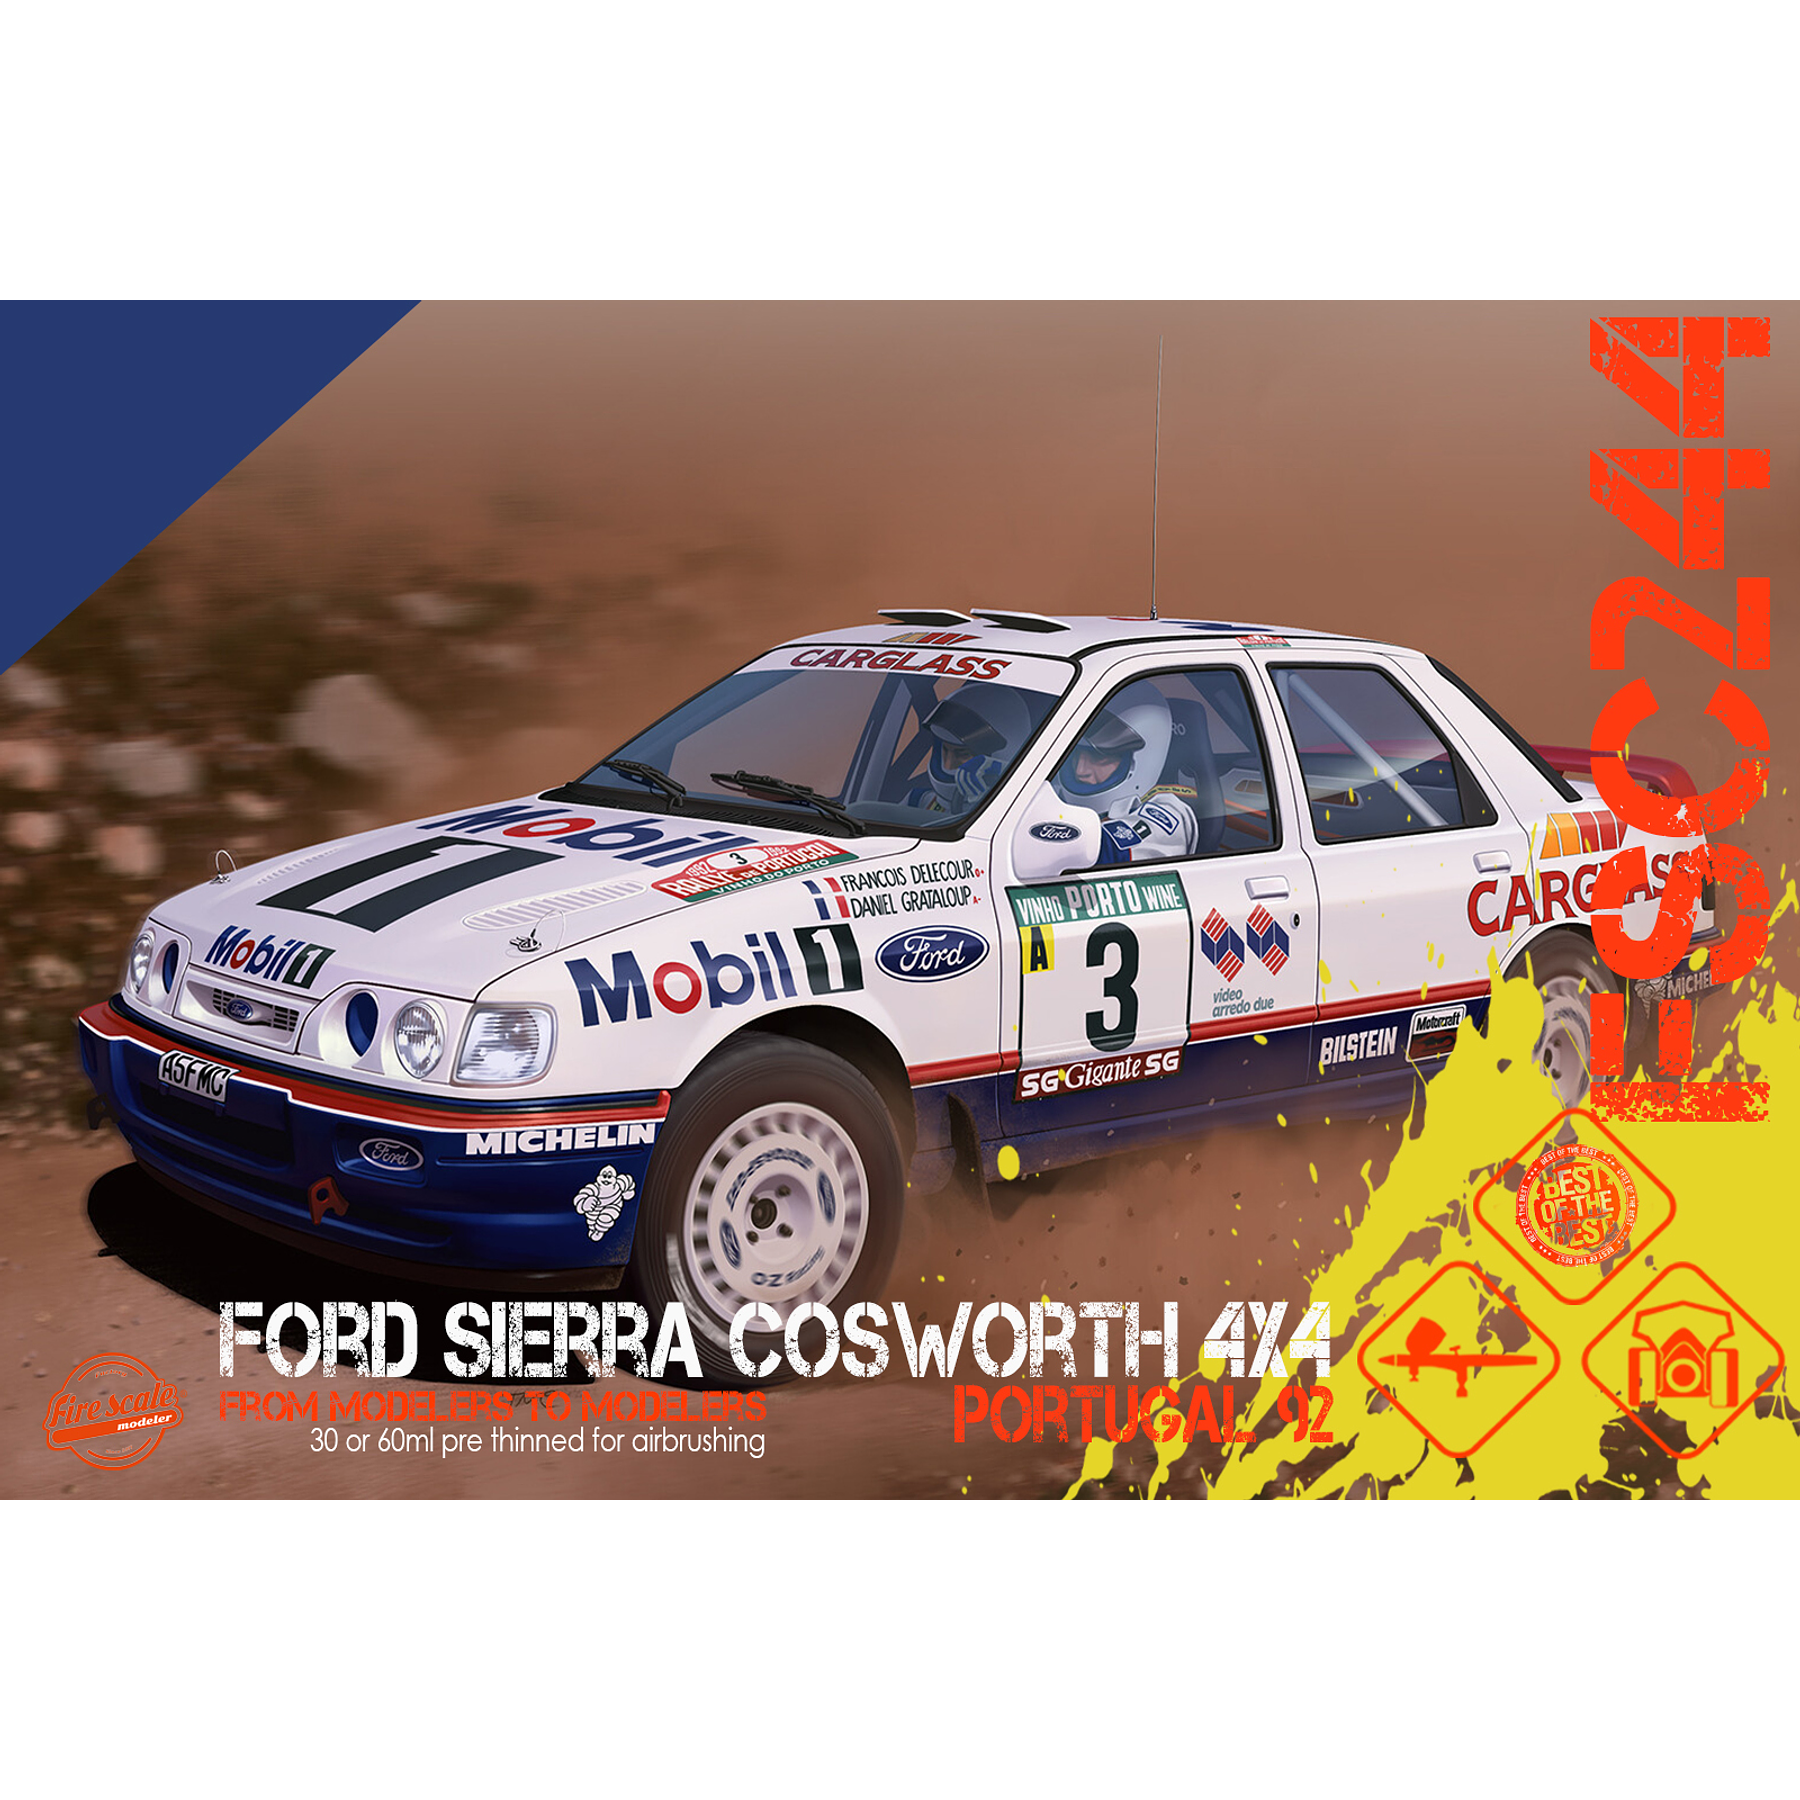 Ford Sierra Cosworth 4x4 Portugal 92 - Blue